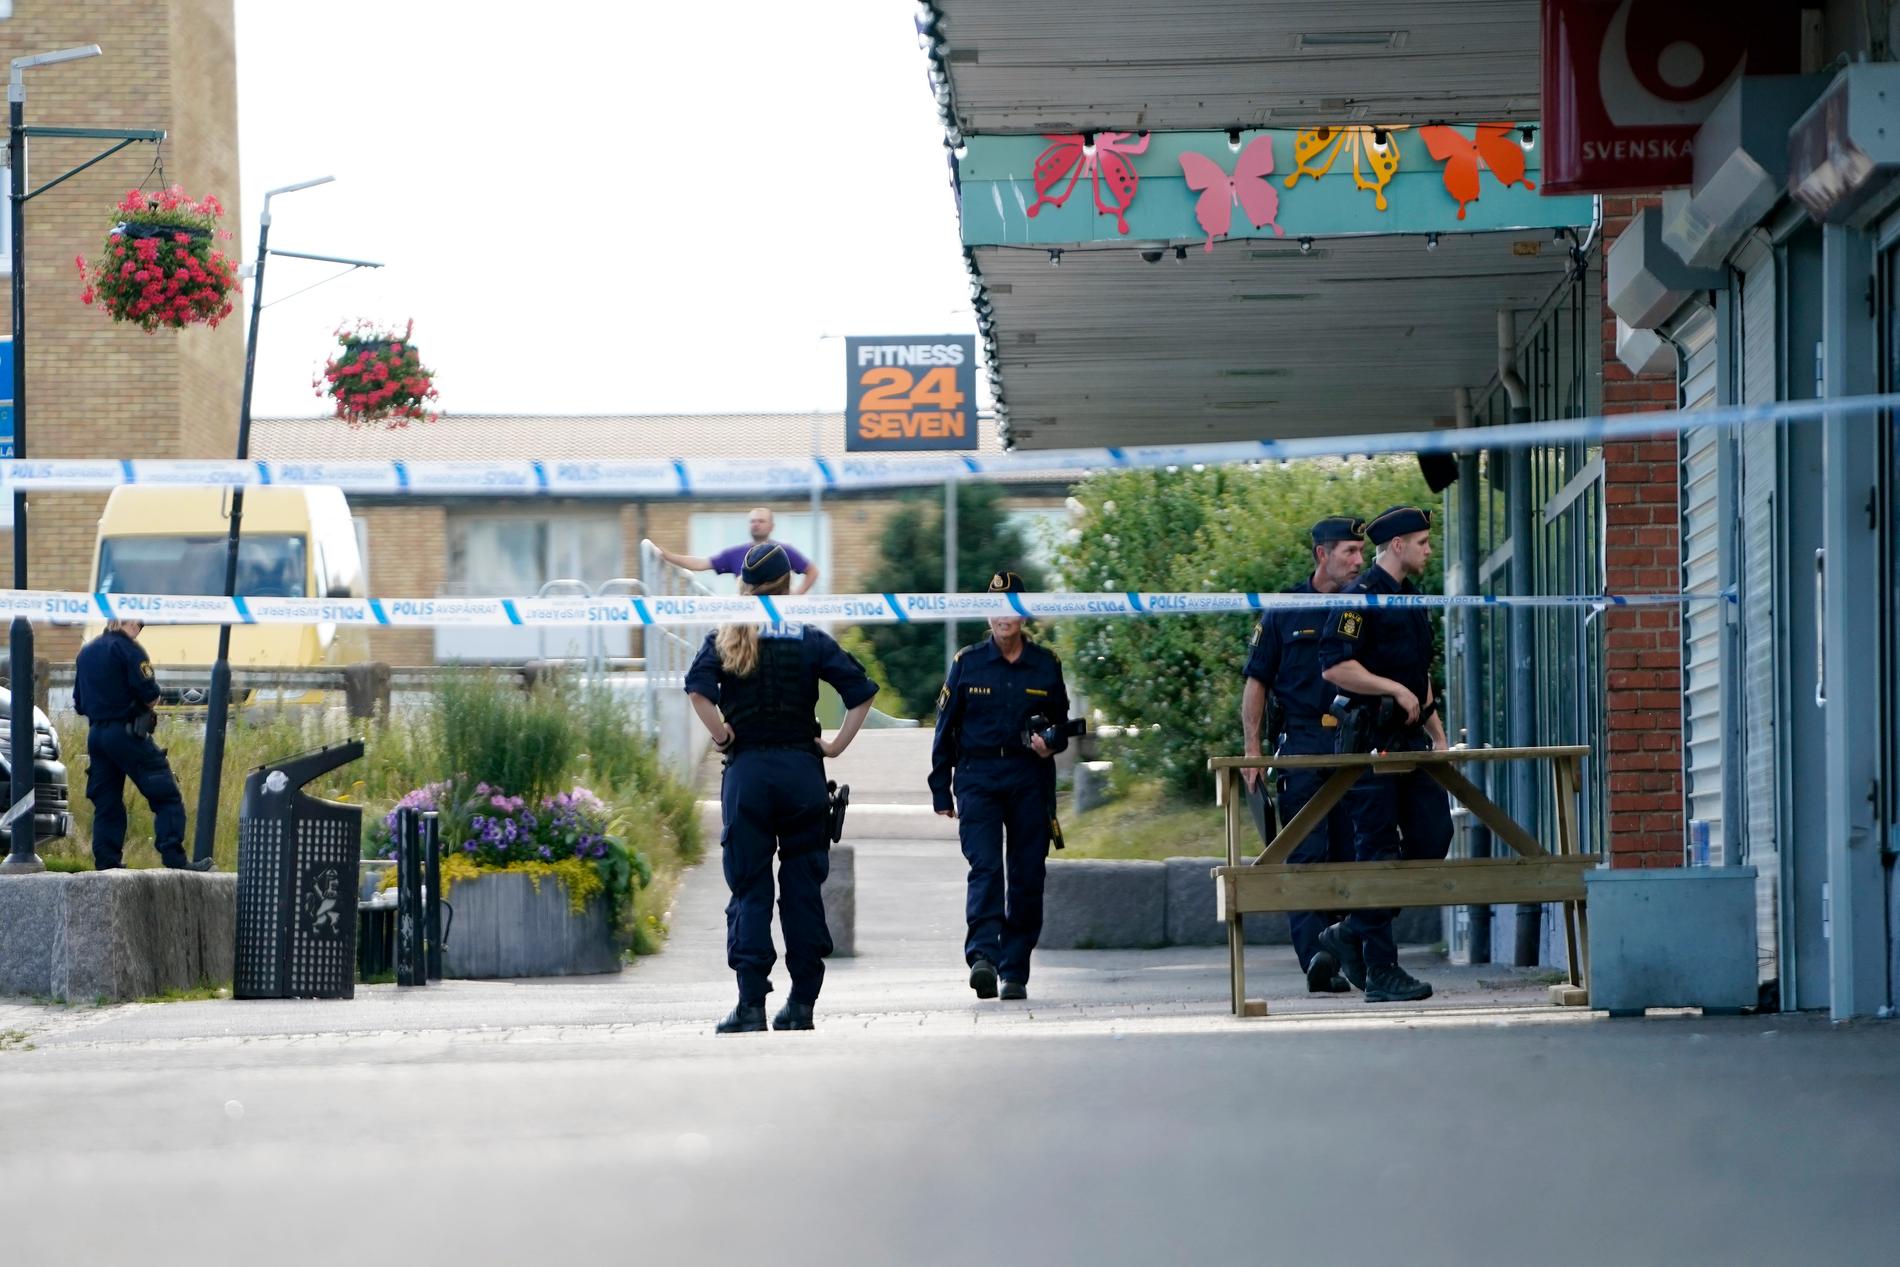 Tre personer är häktade för mordet, alla med kopplingar till kriminella nätverk, enligt uppgifter till Aftonbladet.